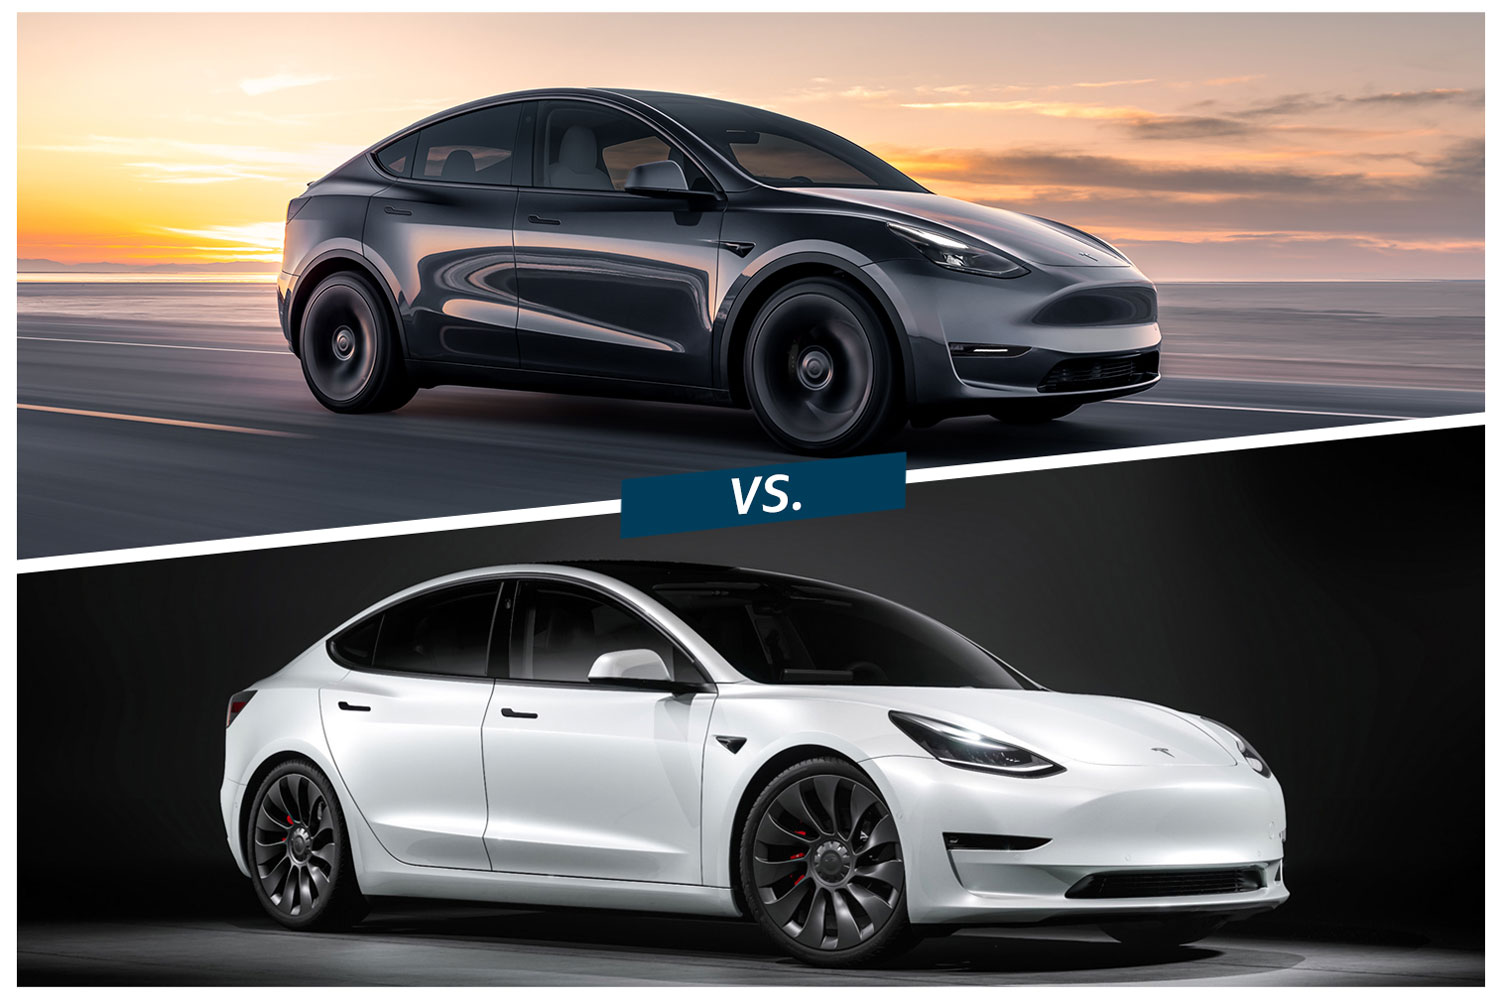 2022 Tesla Model Y in black vs 2022 Tesla Model 3 in white